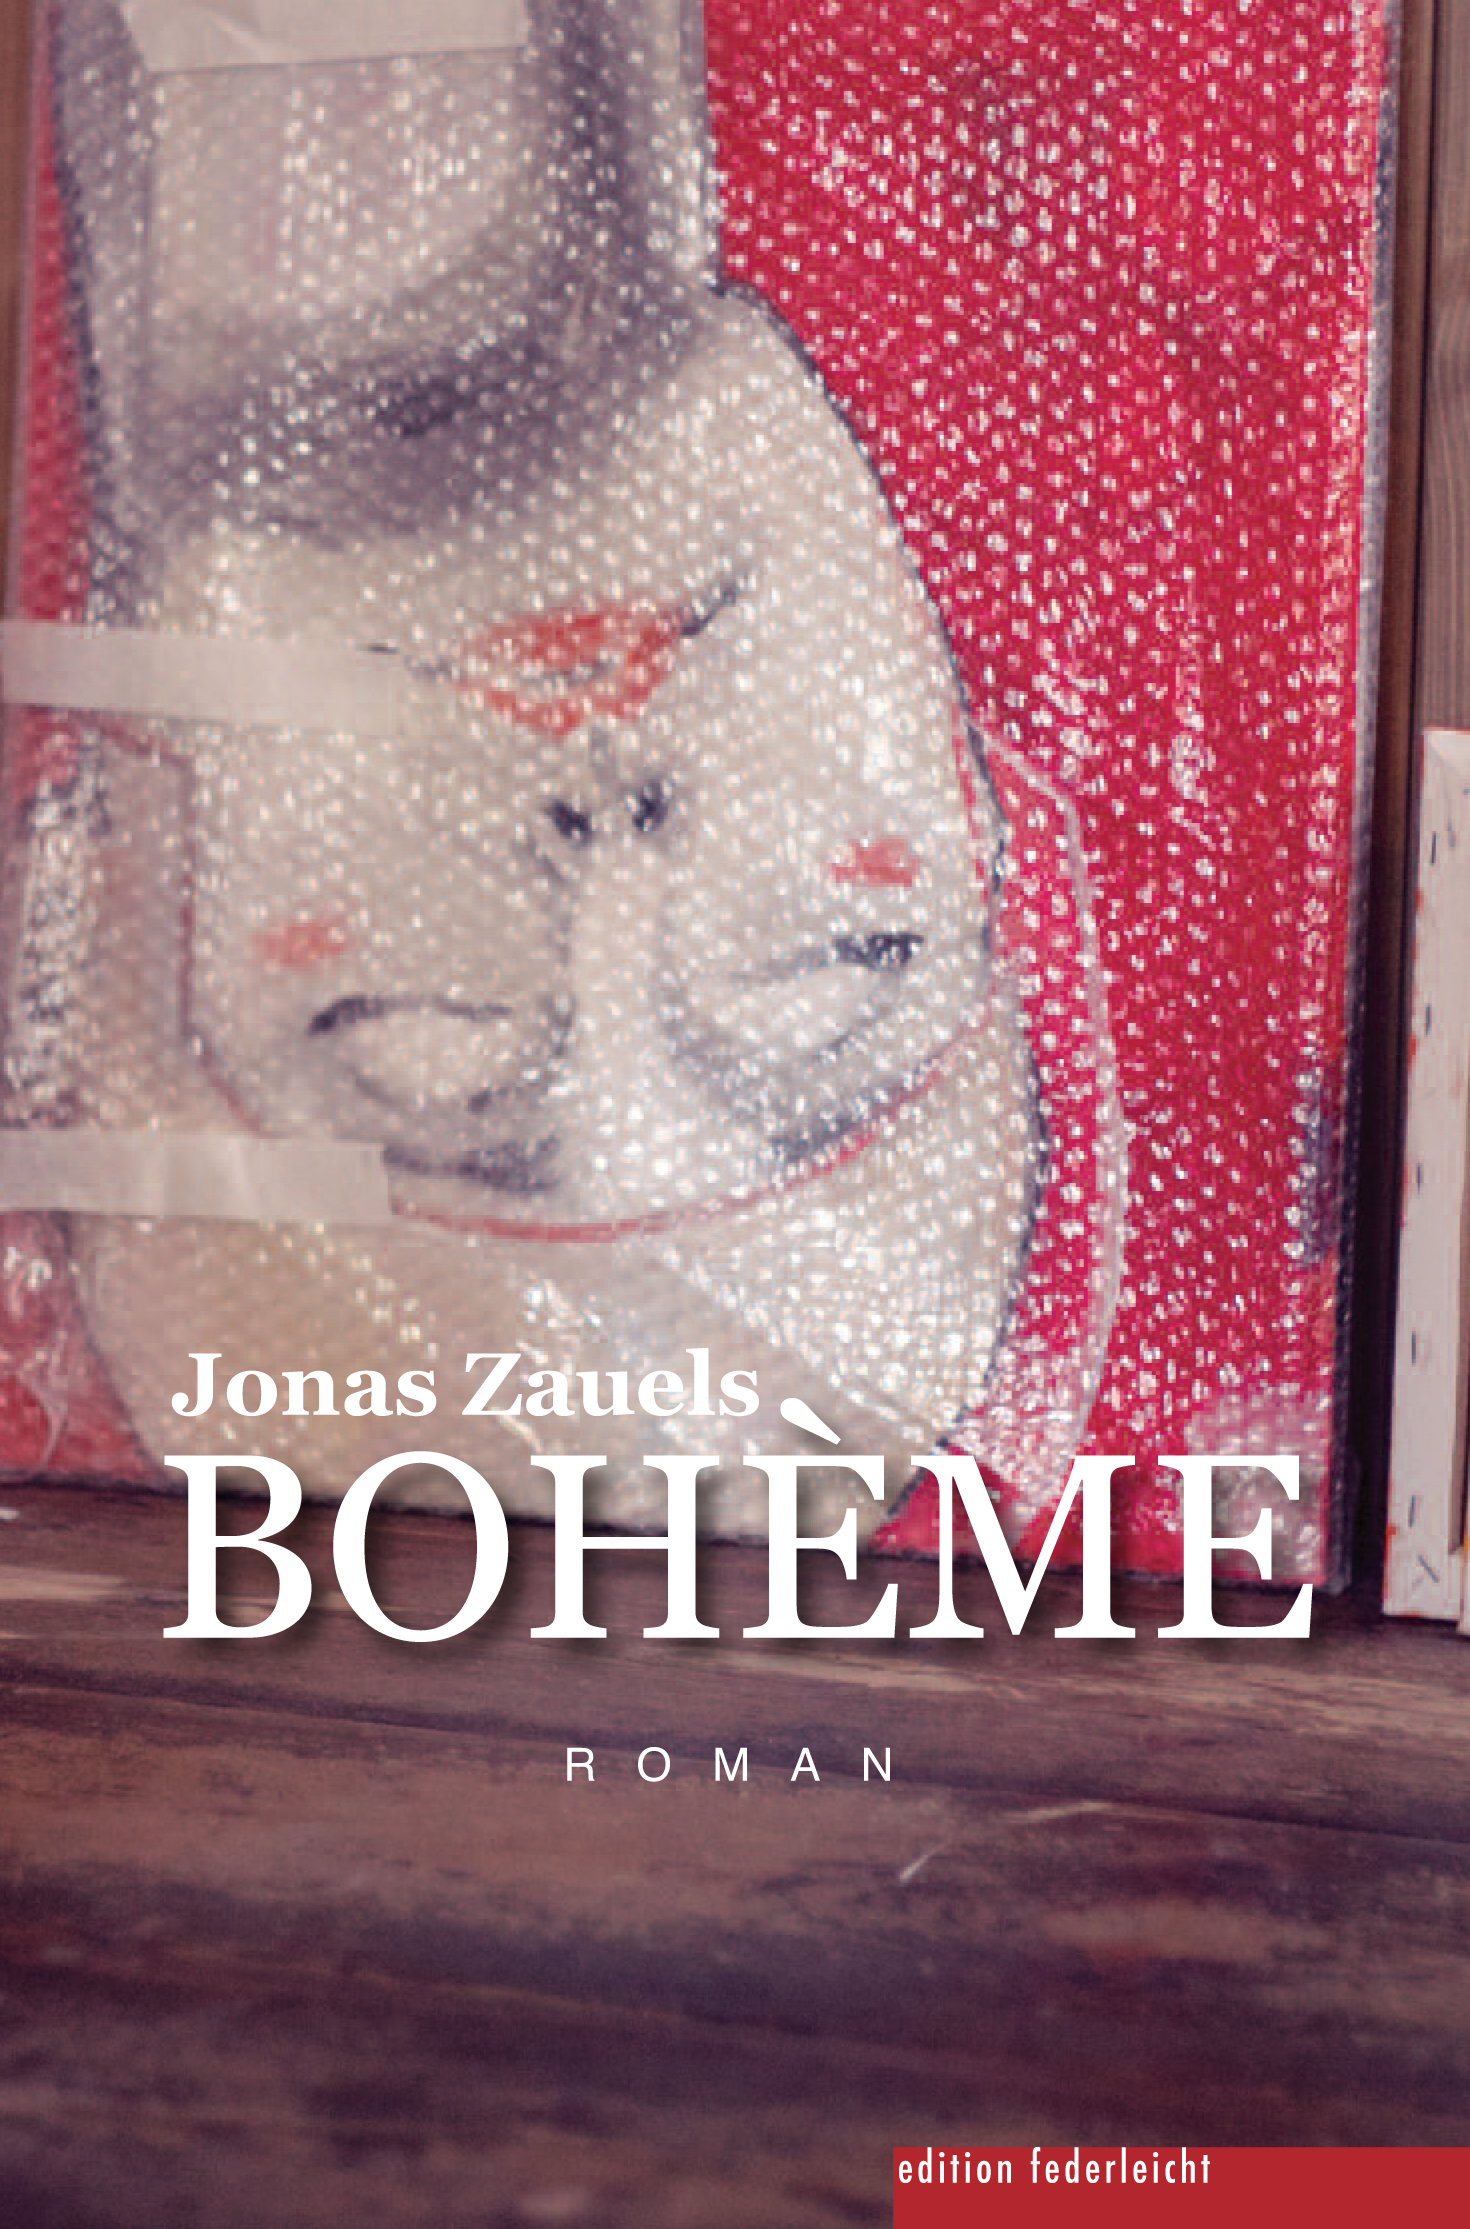 Jonas Zauels liest aus seinem Roman BOHÈME